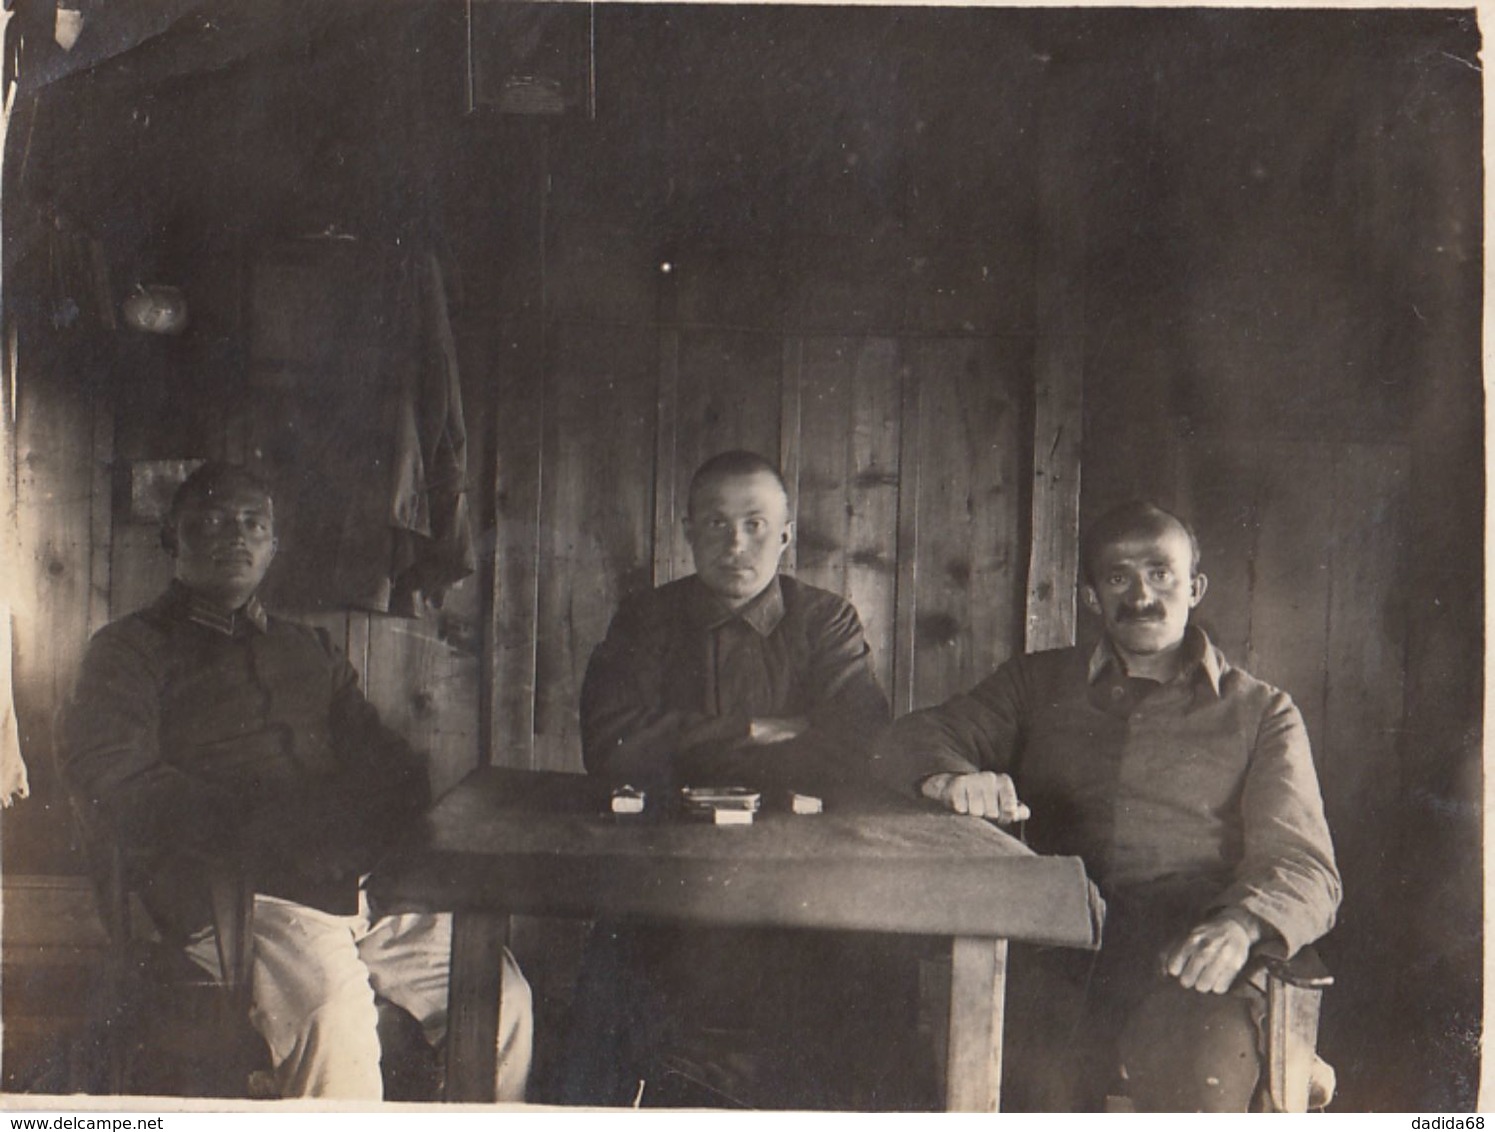 CARTE PHOTO ALLEMANDE - GUERRE 14-18 - SOLDATS ALLEMANDS ATTABLÉS - 4 PHOTOS (JEU D'ECHEC) - Guerre 1914-18